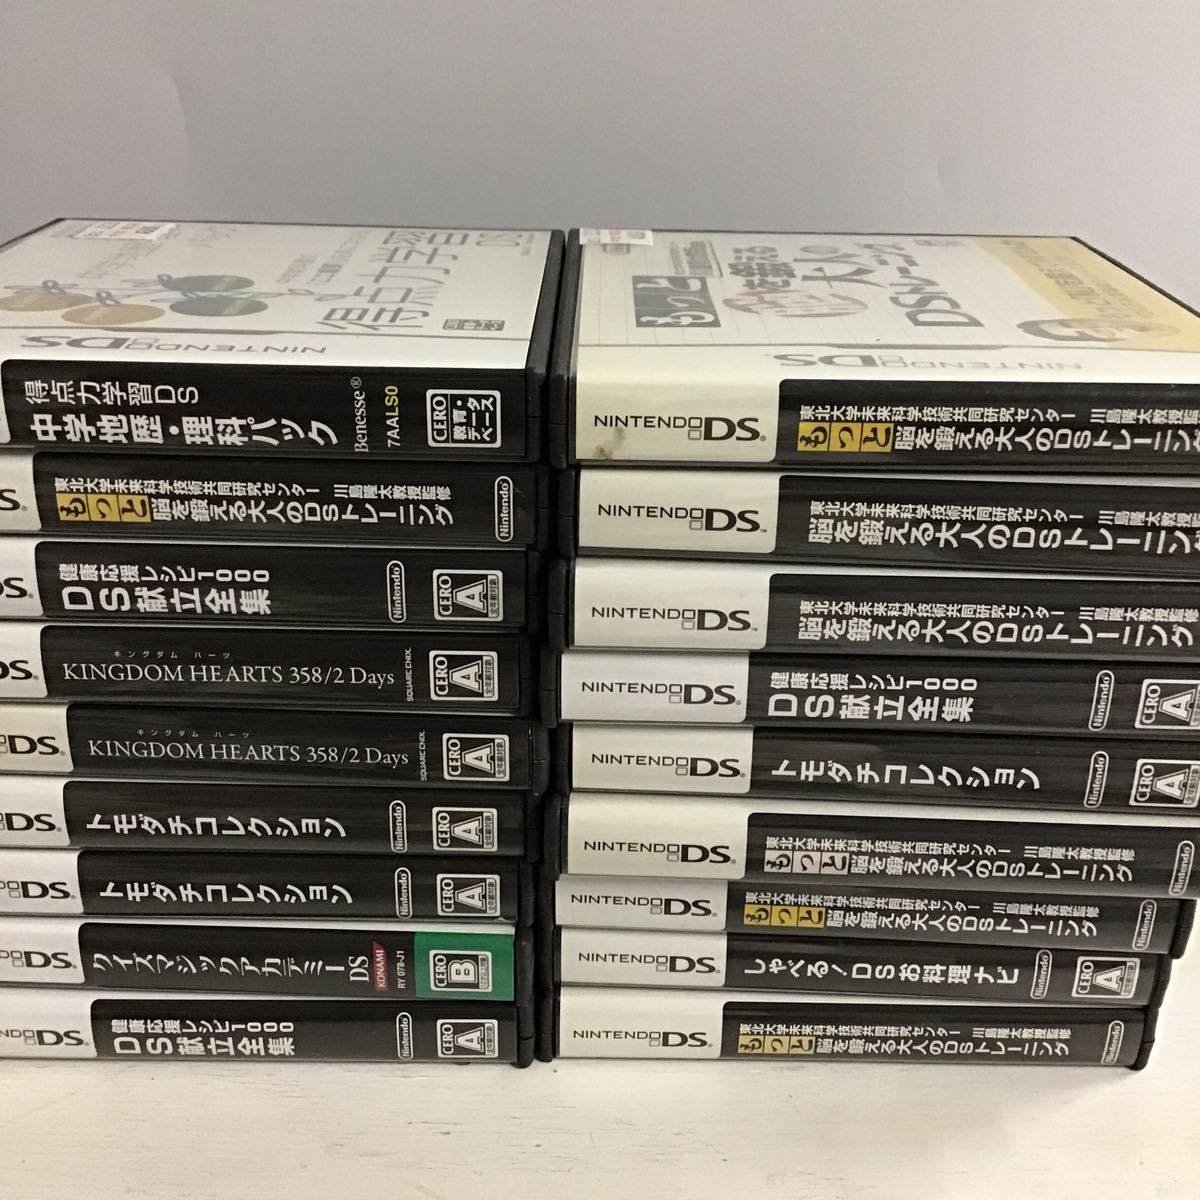 26【ジャンク】SONY PSP NintendoDS ファイナルファンタジー キングダムハーツ 他 ゲームソフト 過在庫 大量まとめ (100)_画像6